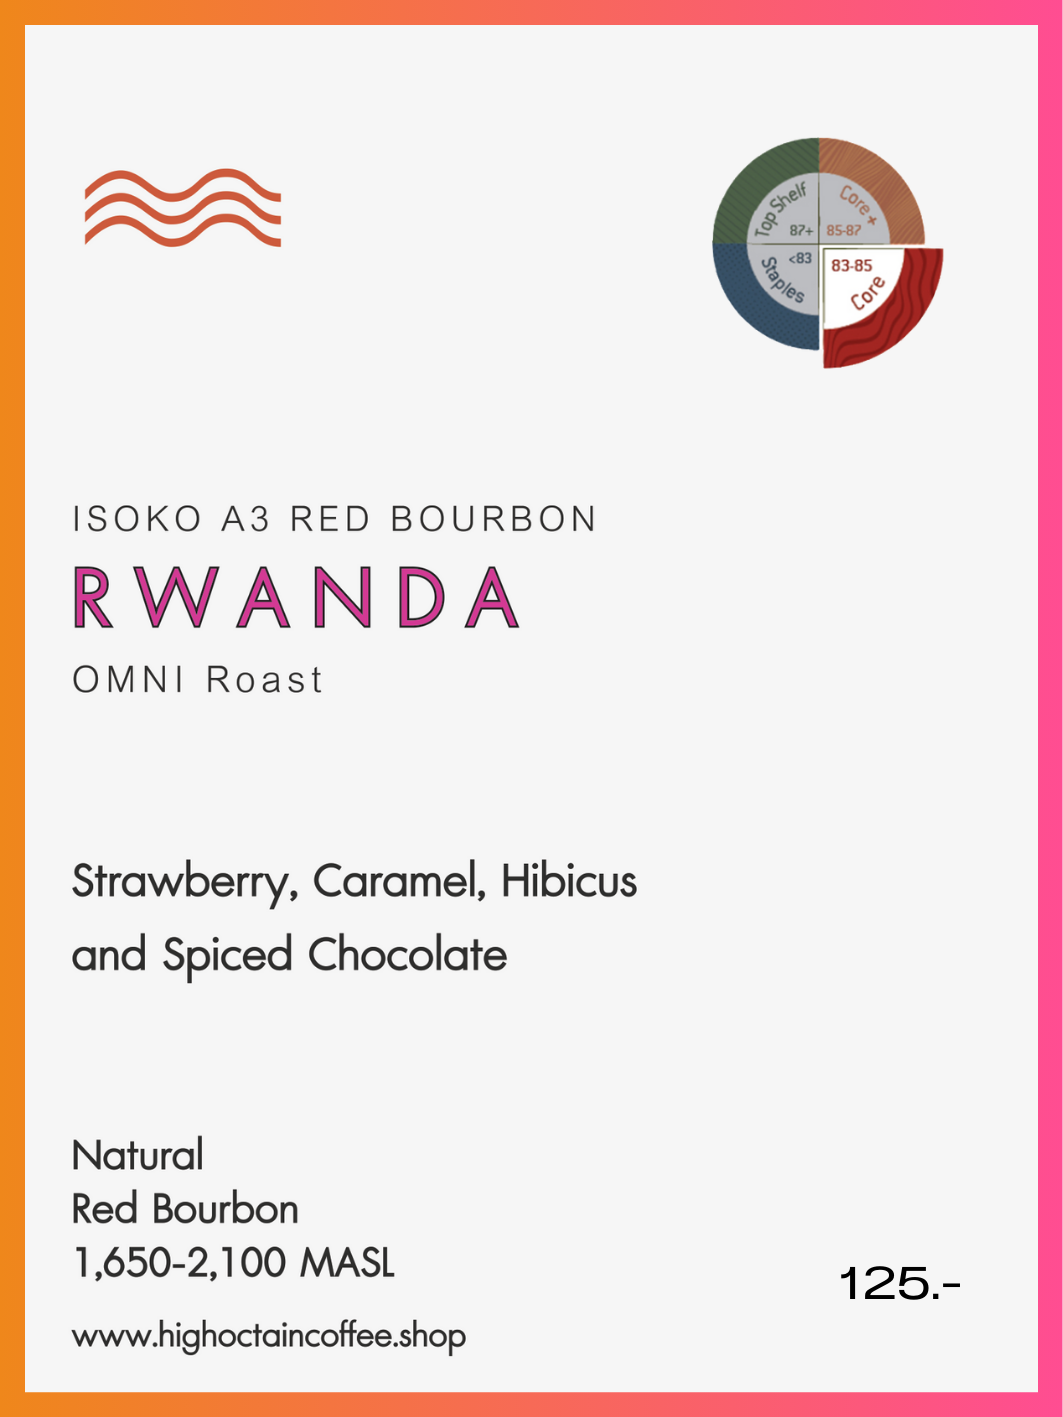 RWANDA - ISOKO A3 RED BOURBON